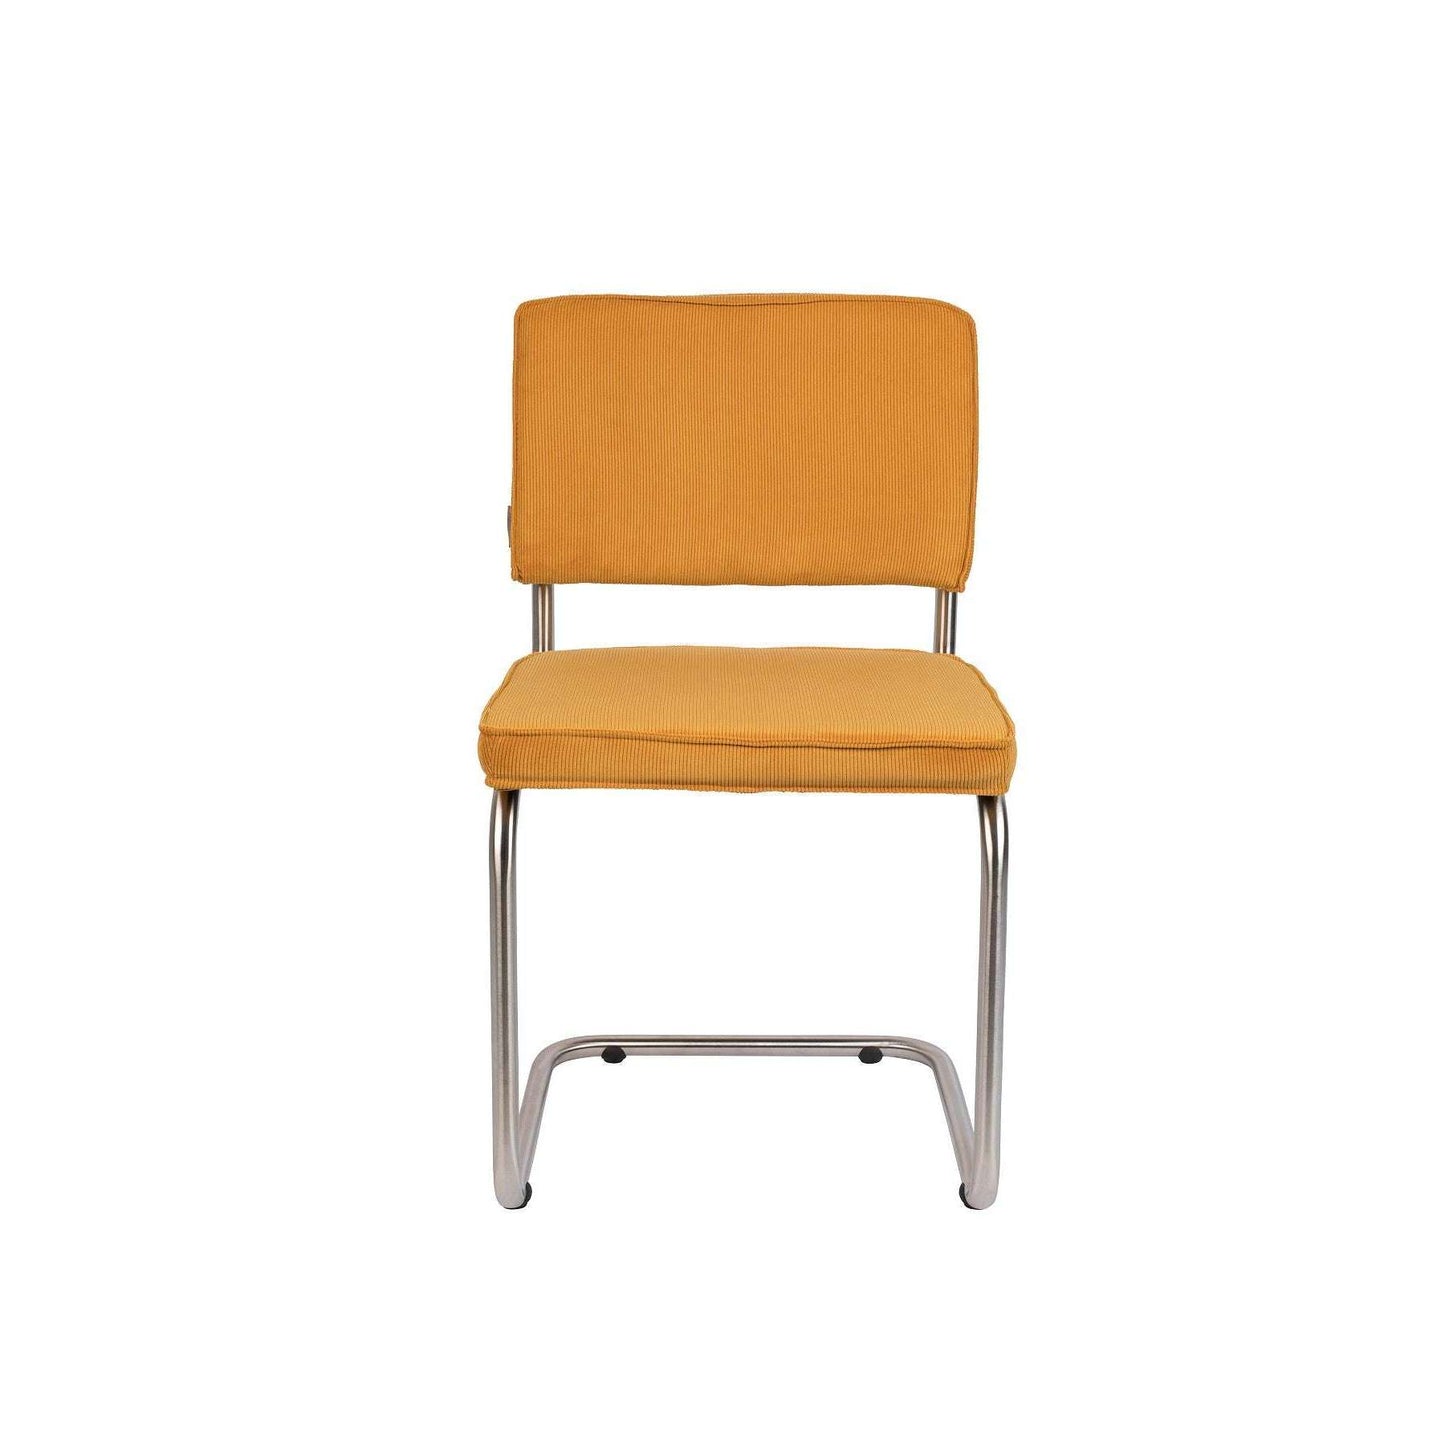 Zuiver stoel ridge brushed rib geel 50 x 48 x 85 cm